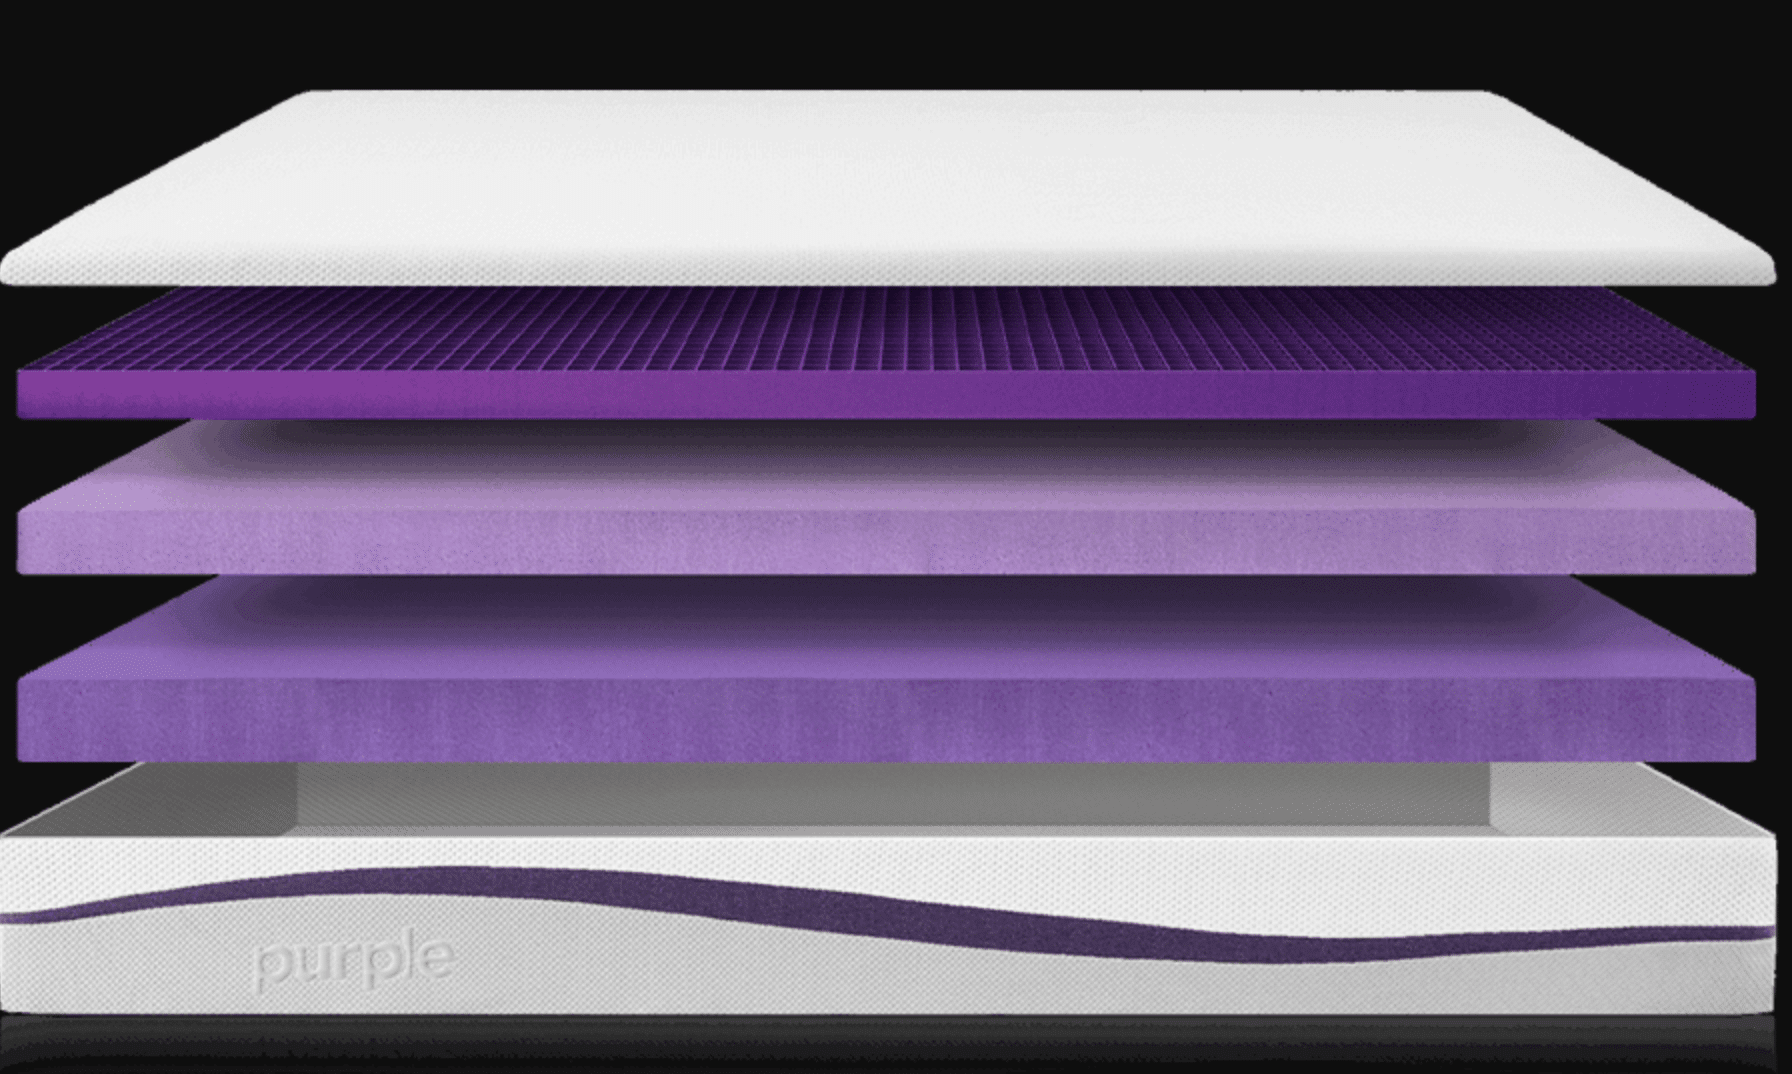 mattress in a box purple